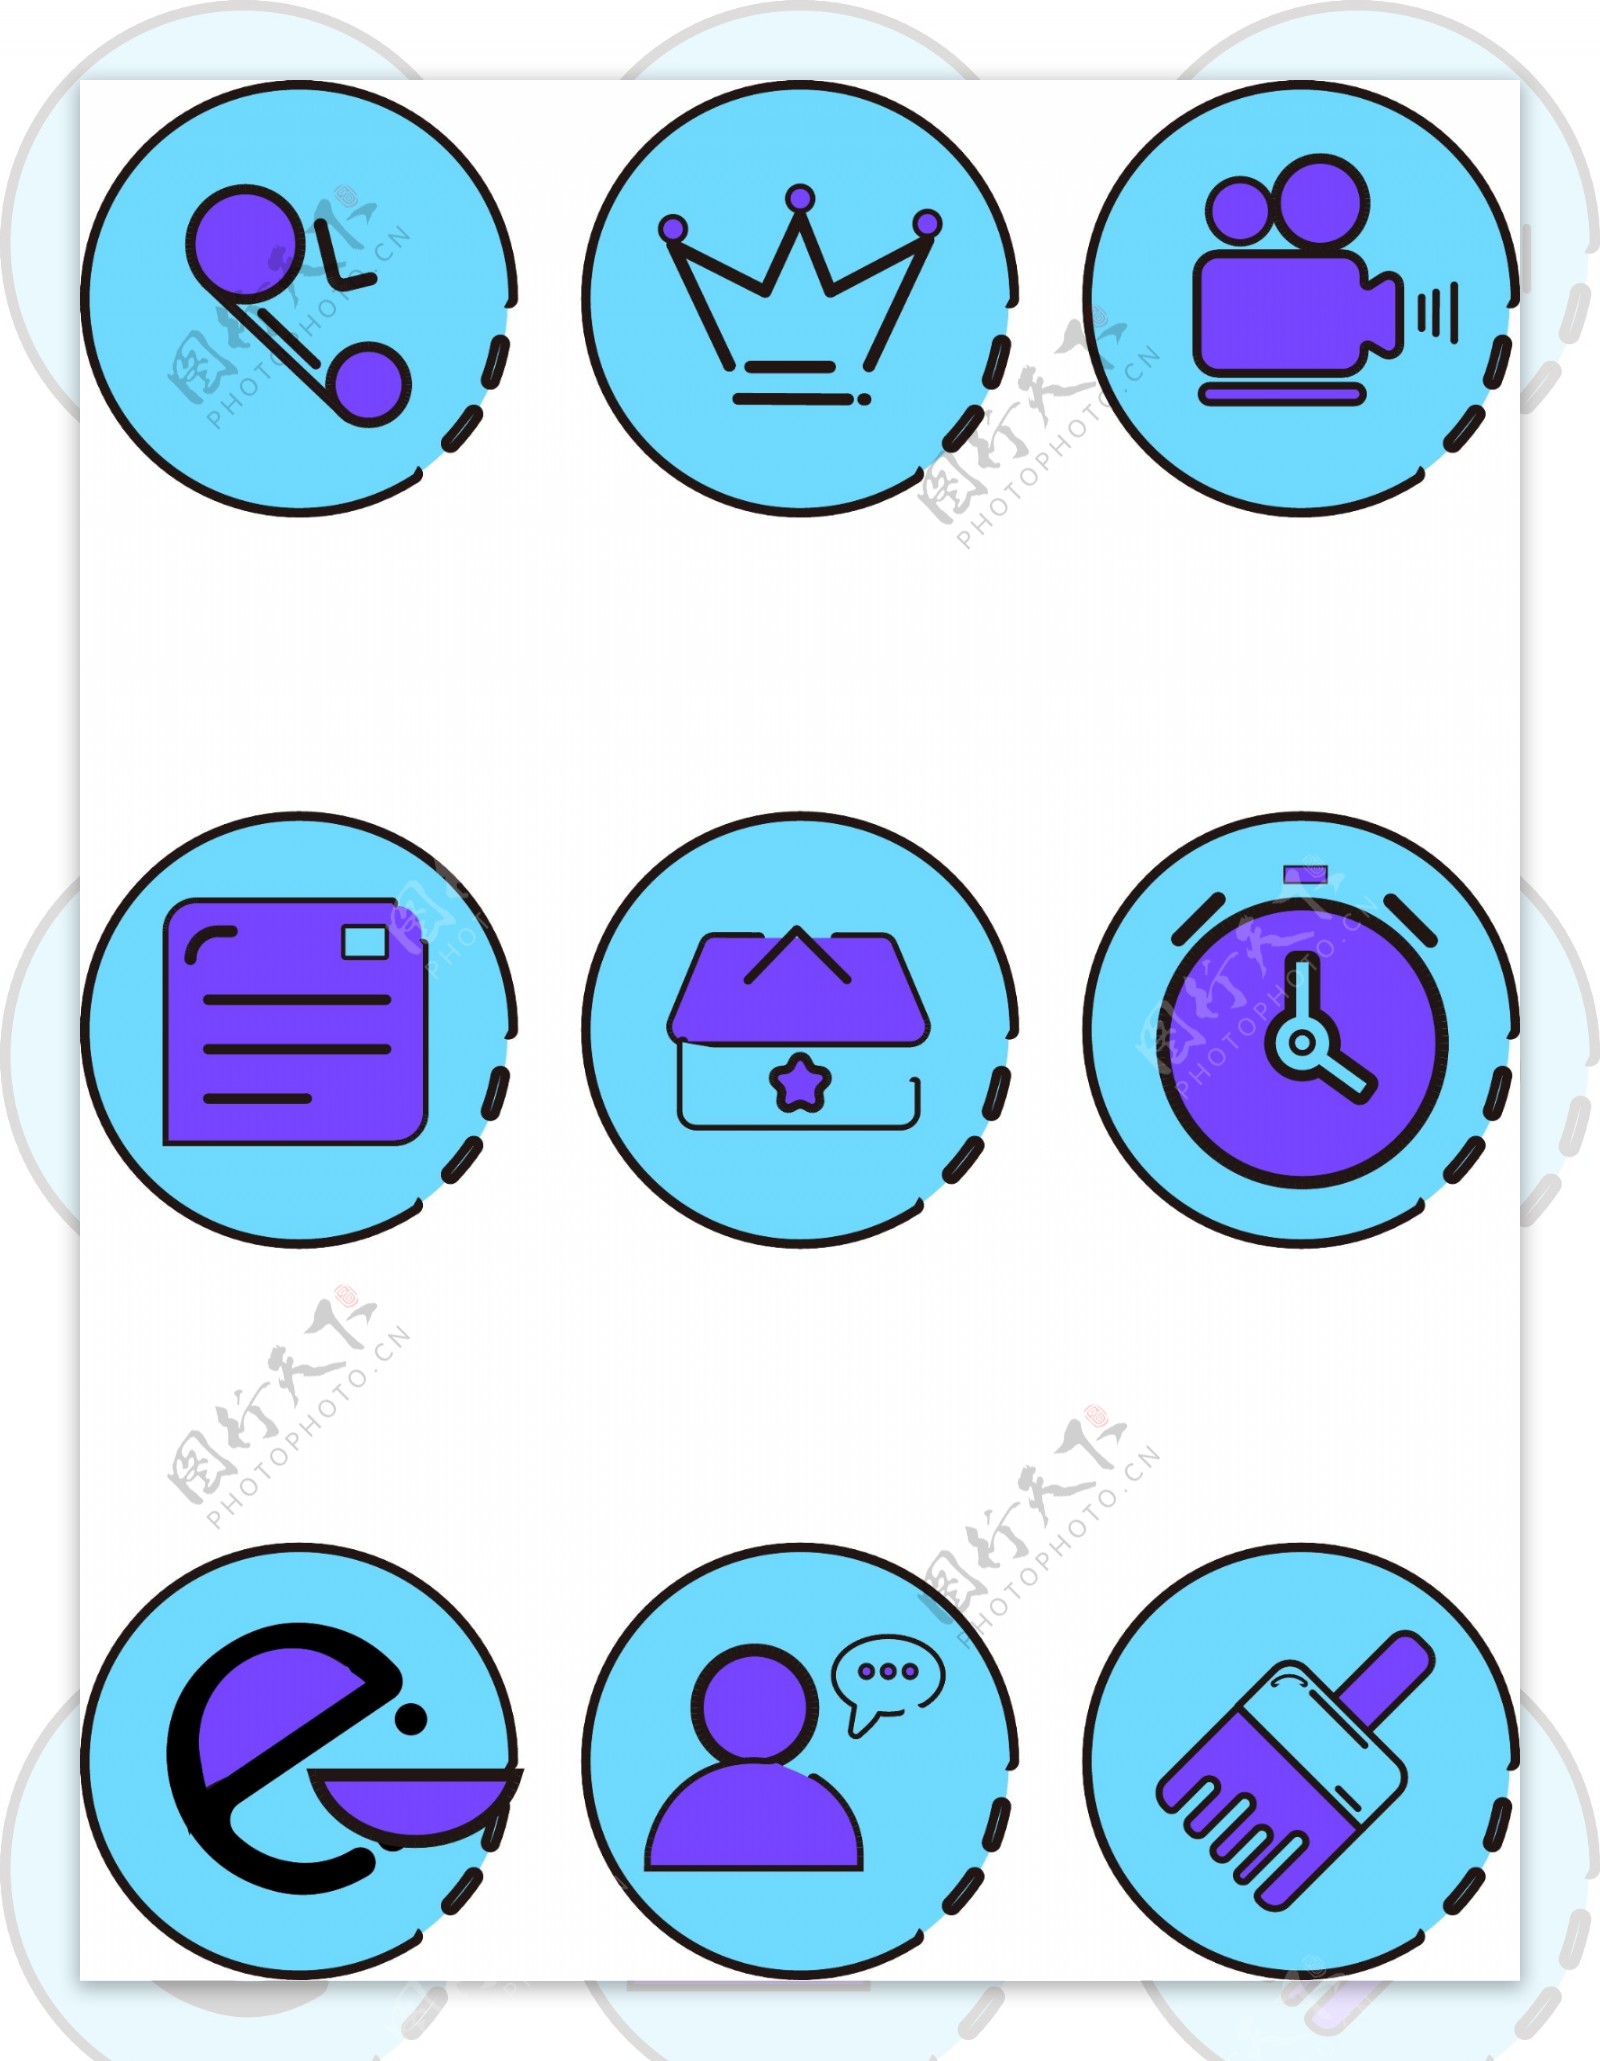 手机主题蓝色卡通APP手机小图标素材